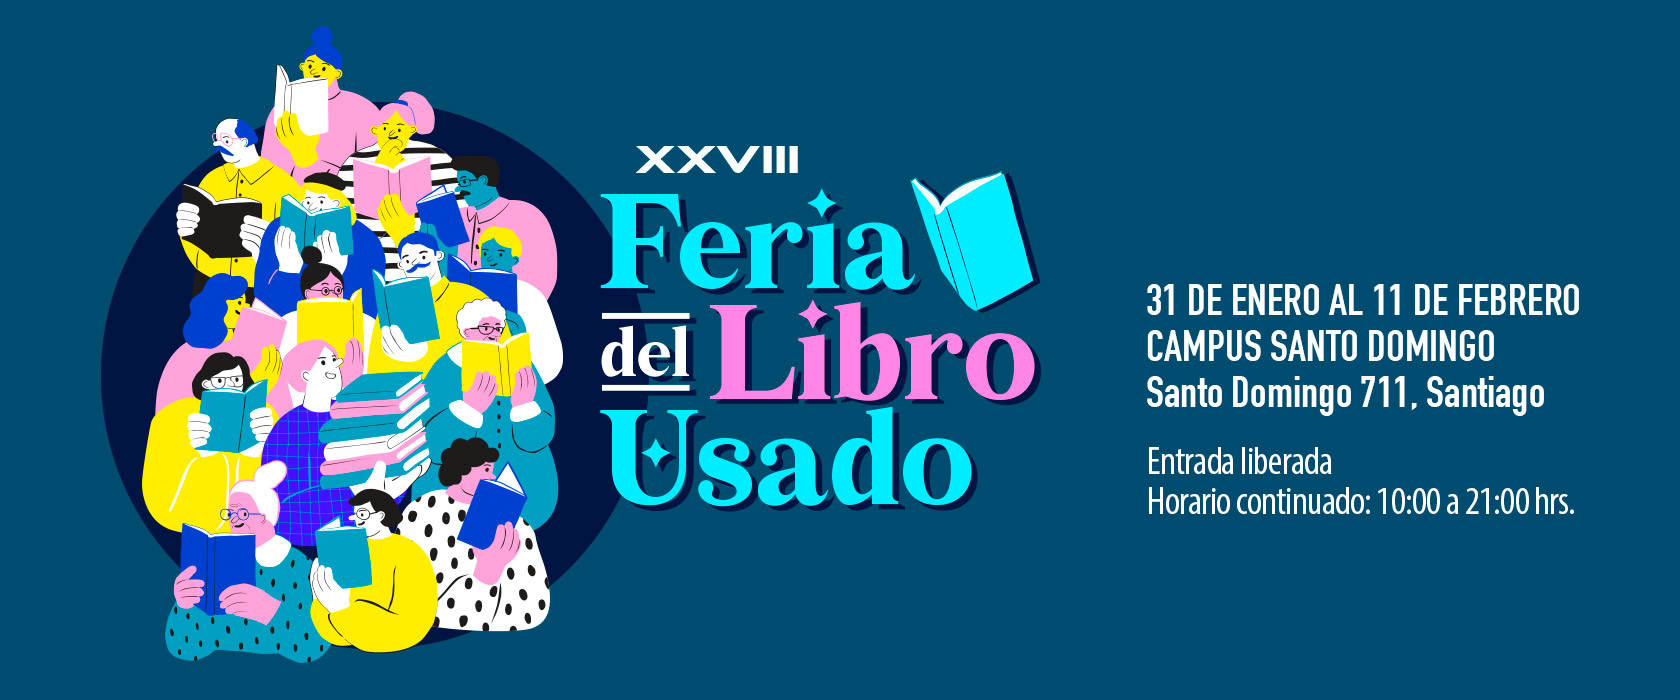 XXVIII Feria del Libro Usado - Universidad Mayor